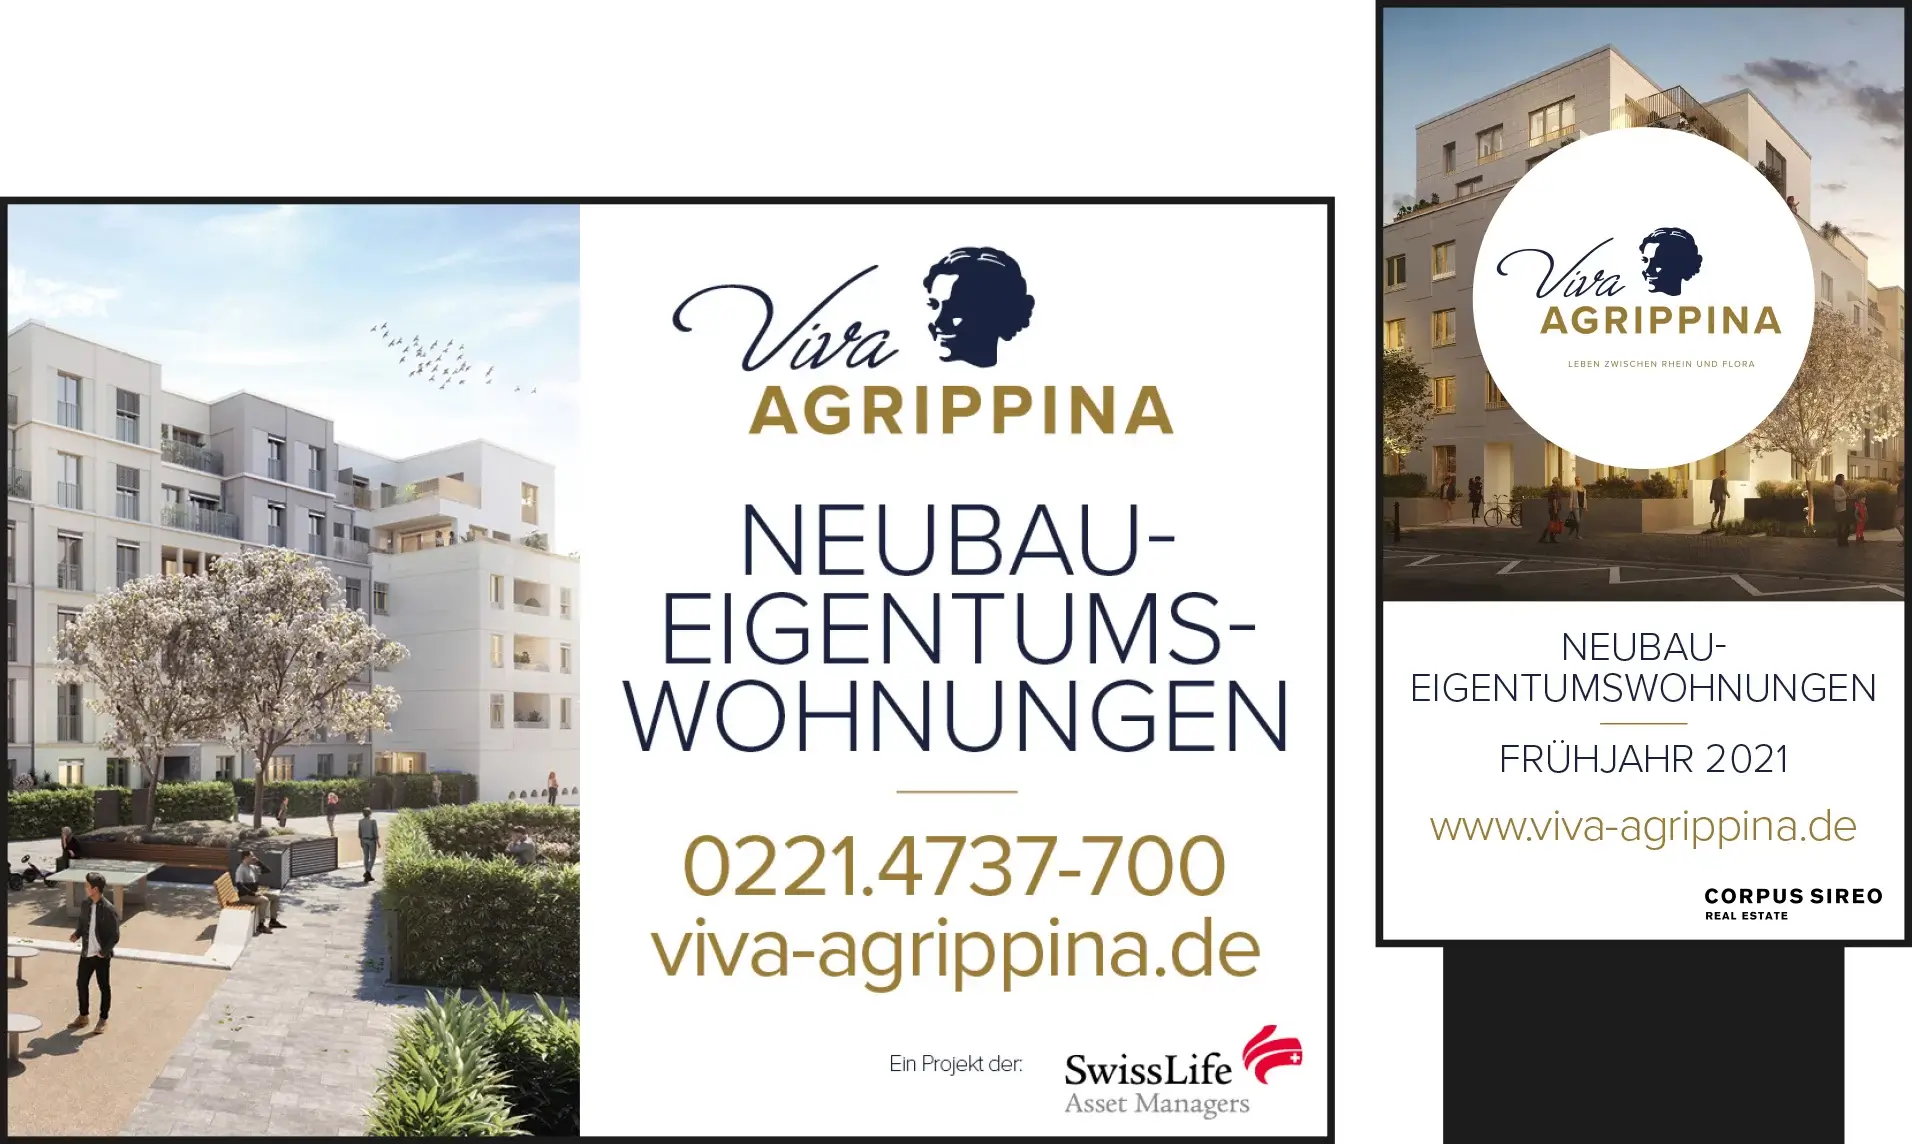 Immobilienmarketing für Viva Agrippina: Außenwerbung